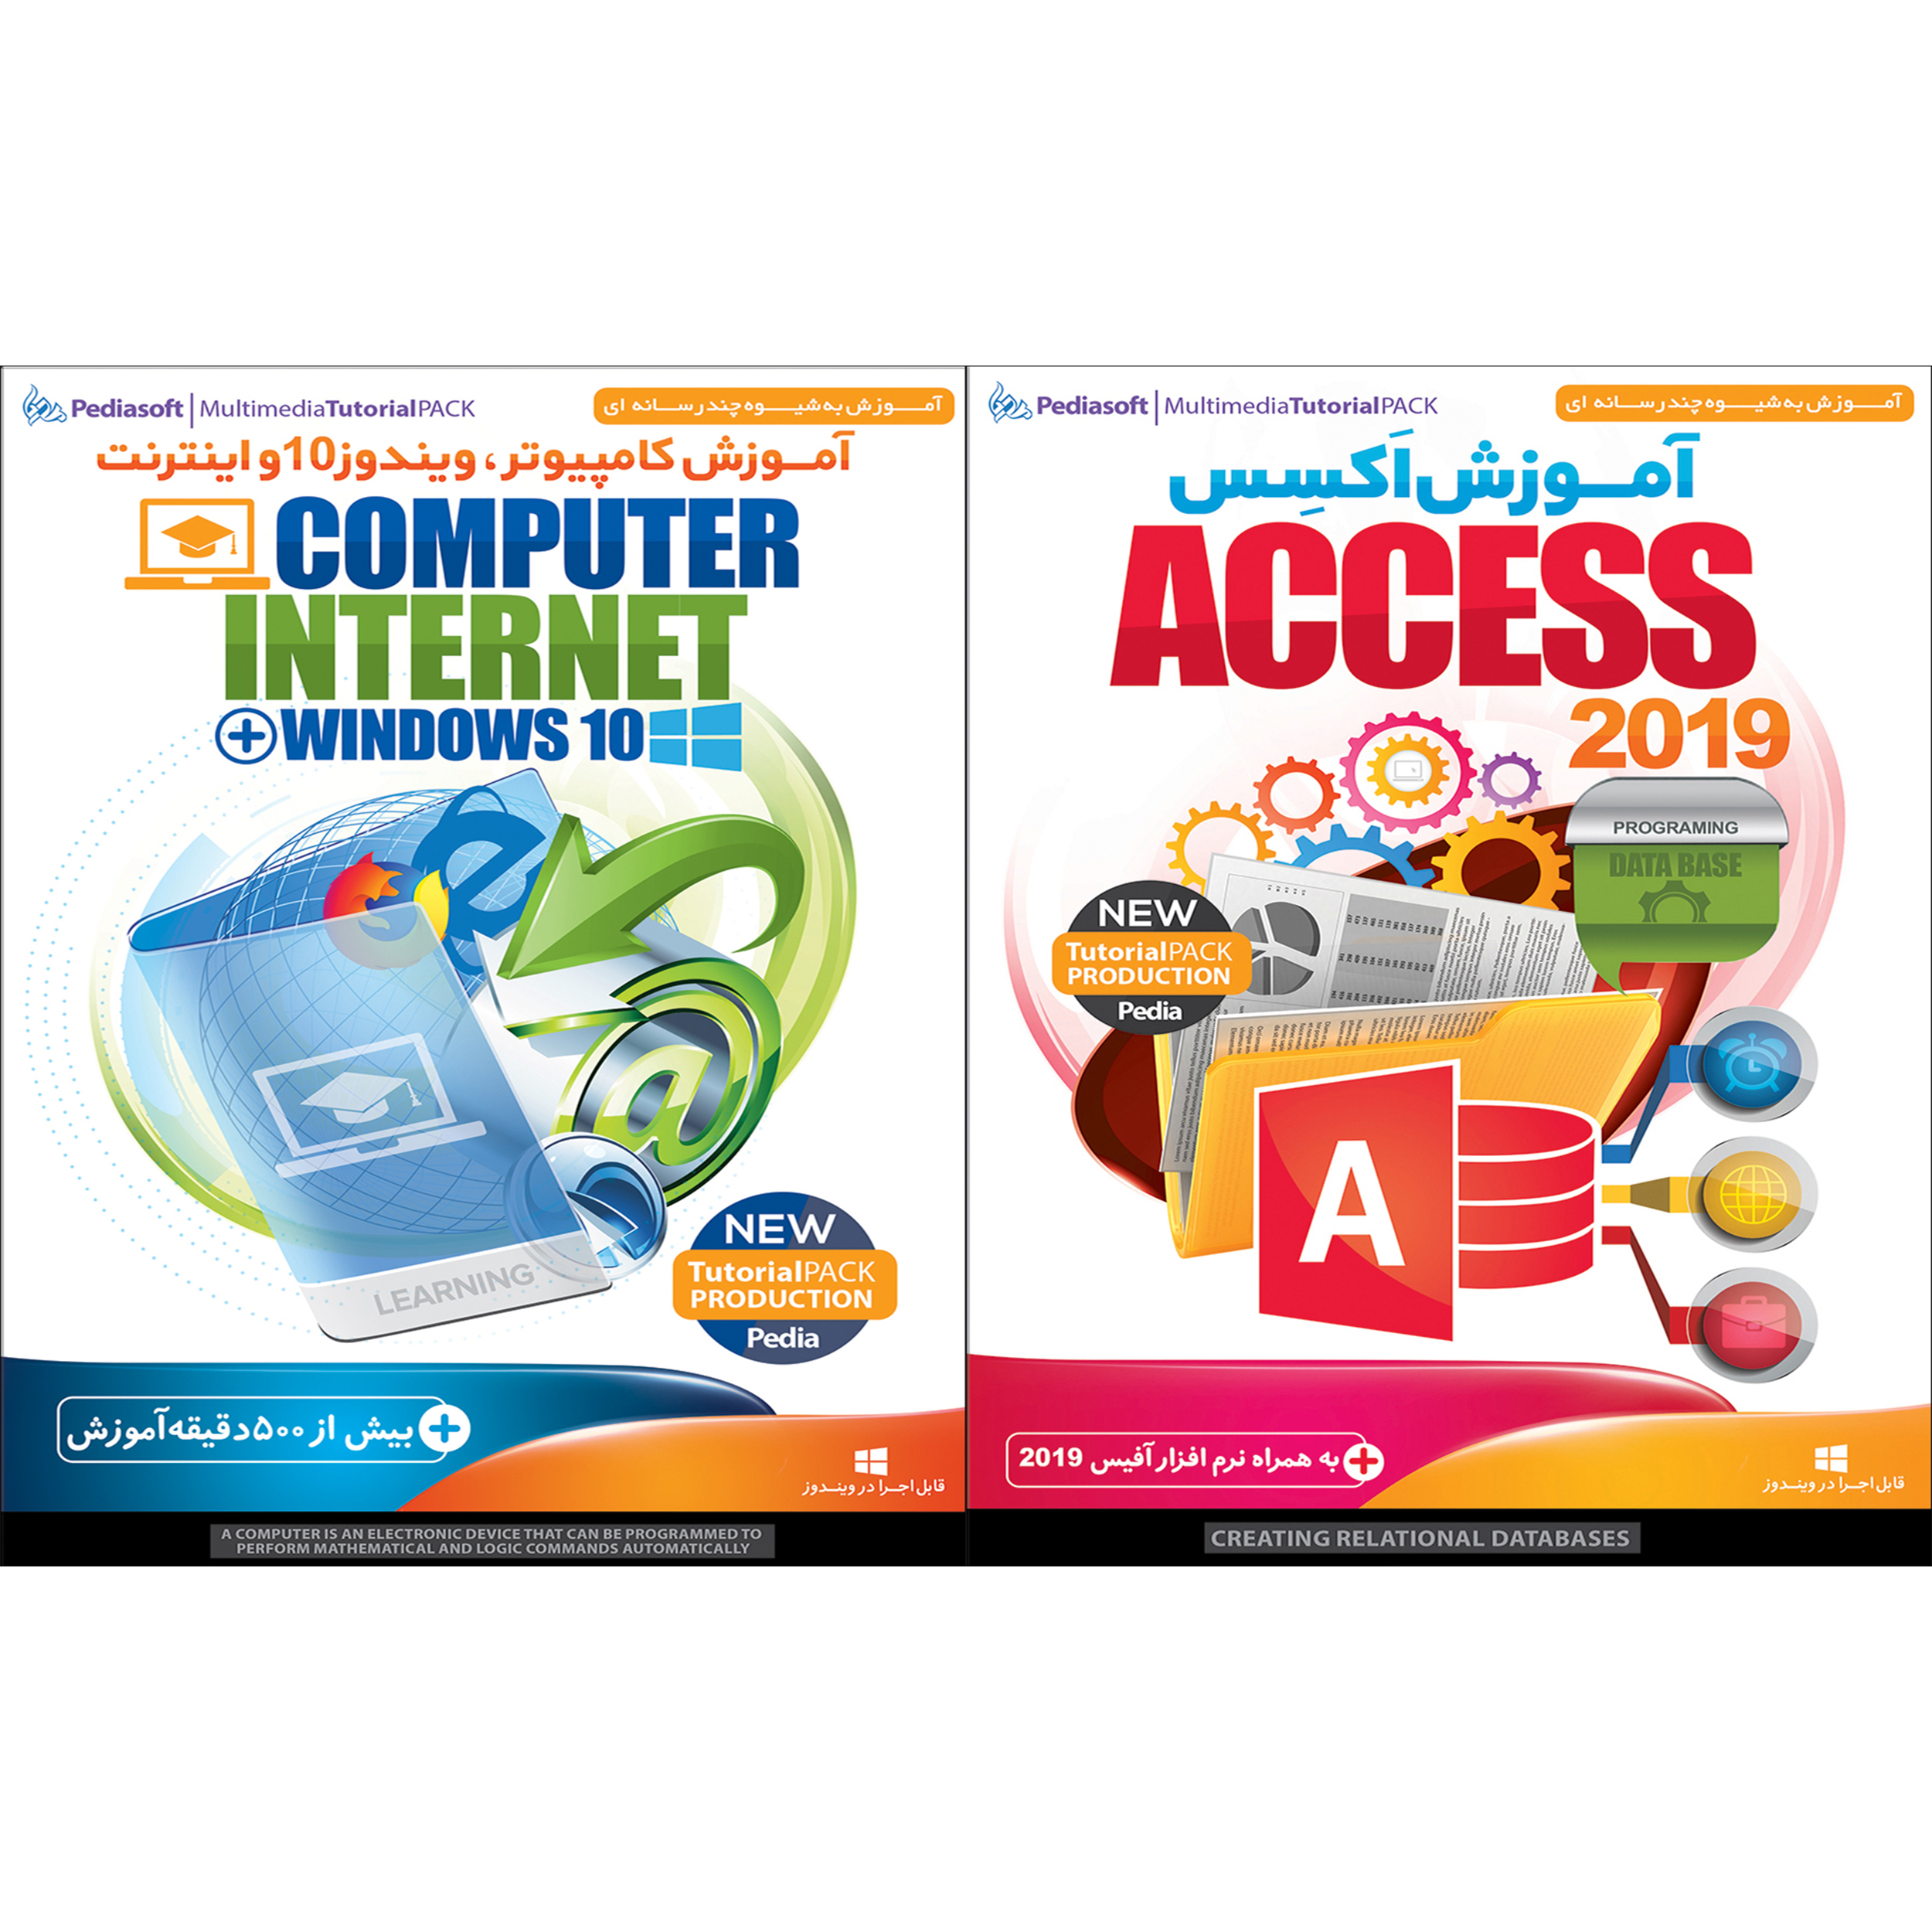 نرم افزار آموزش اکسس Access 2019 نشر پدیا سافت به همراه نرم افزار آموزش کامپیوتر ویندوز 10 و اینترنت نشر پدیا سافت